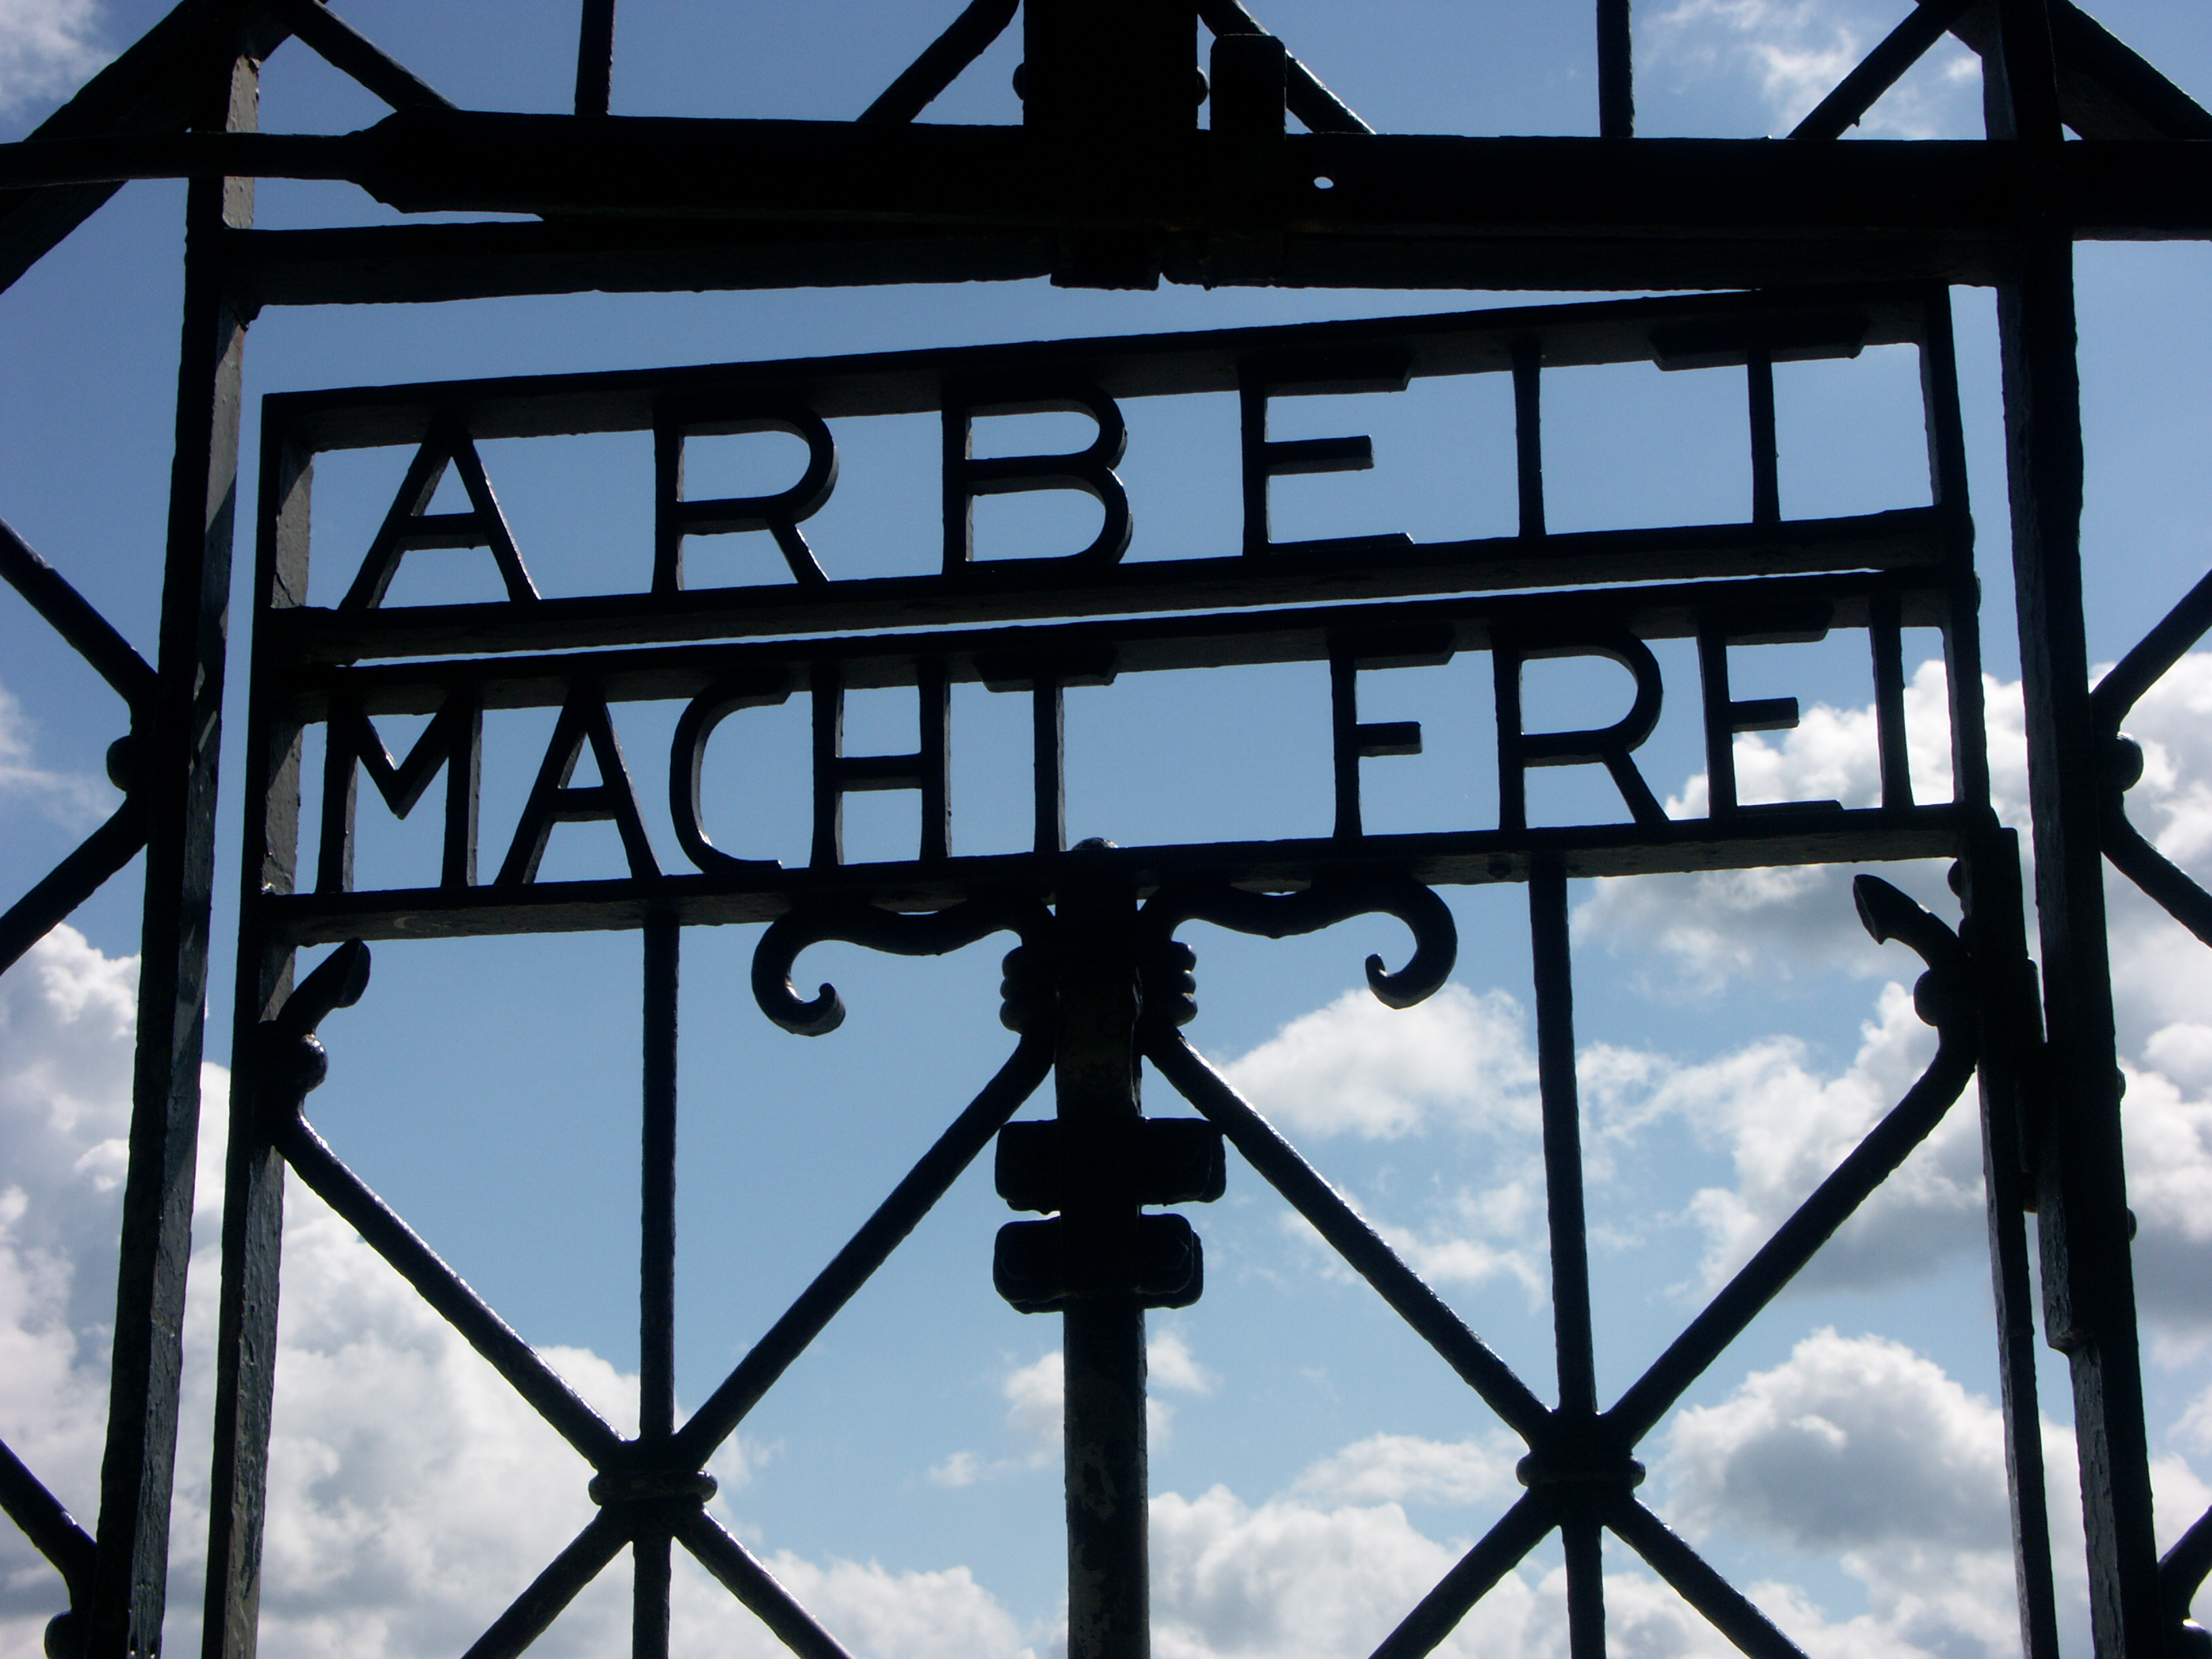 3 dachau concentration camp summary